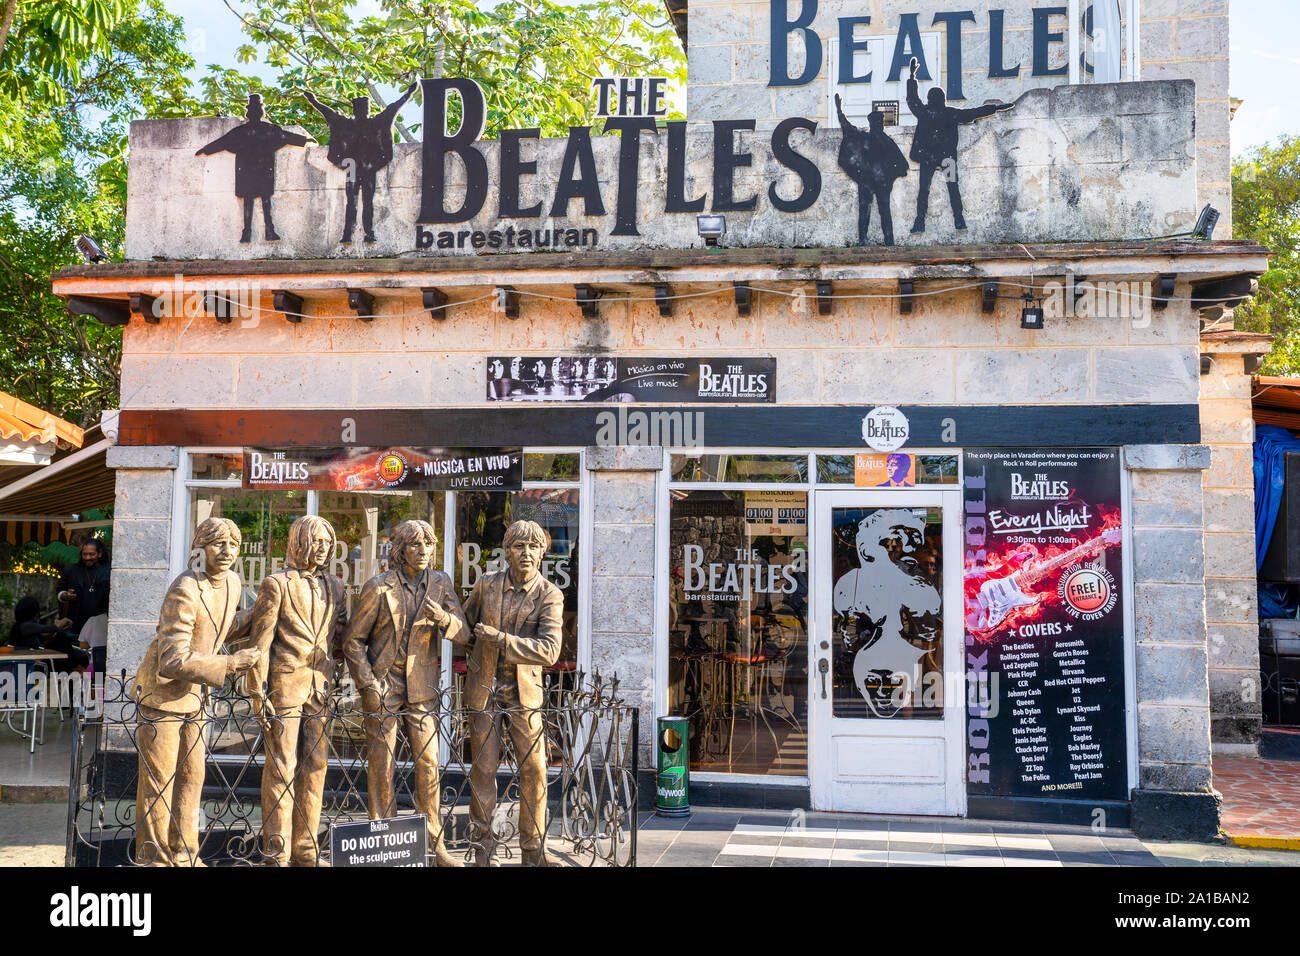 Varadero, Cuba - Gennaio 6, 2019: Immagine dei Beatles ristorante situato nella città di spiaggia di Varadero, Cuba. Foto Stock